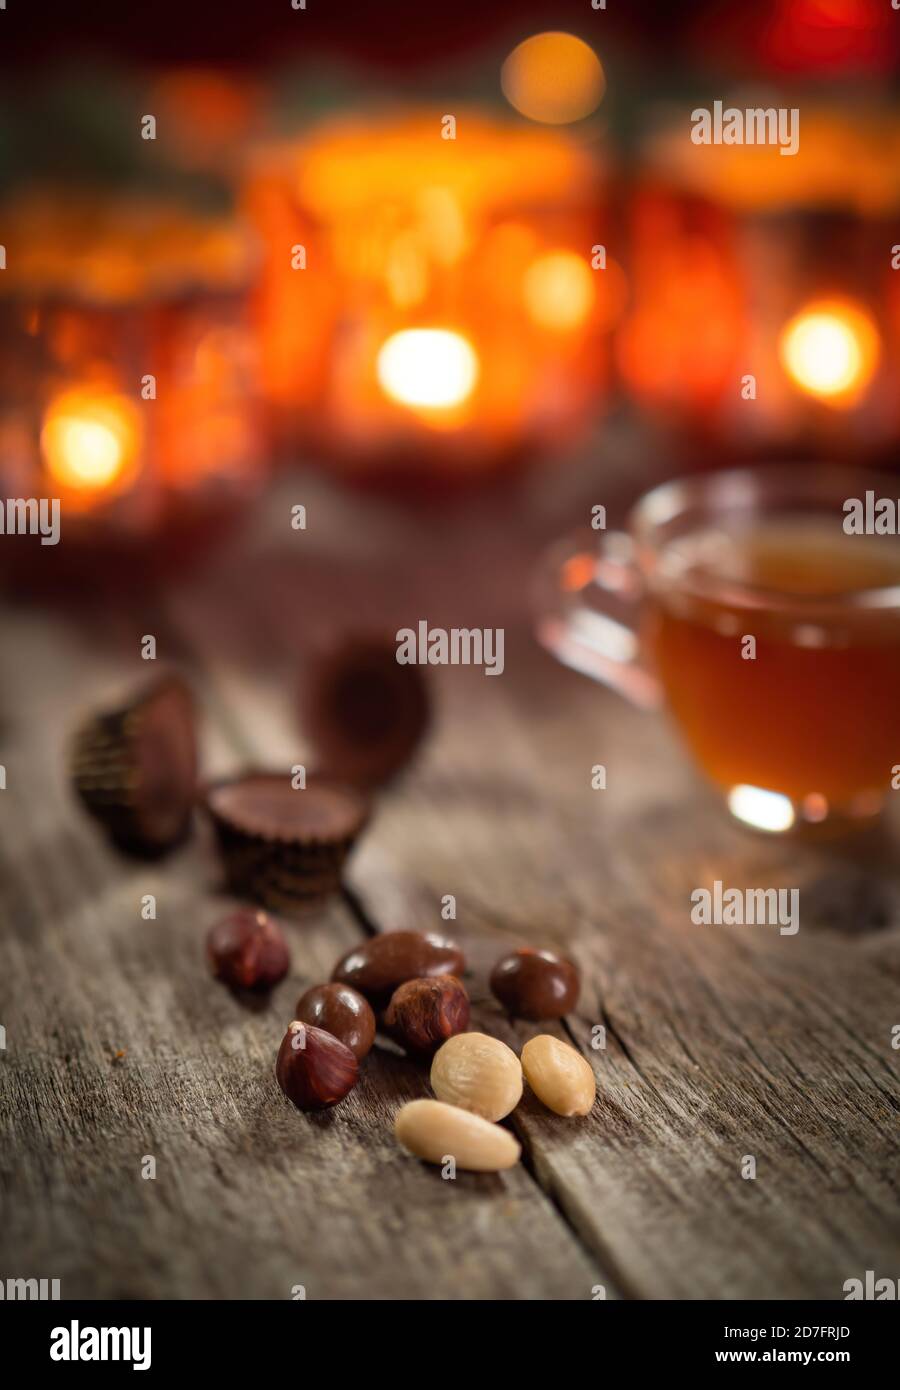 Nüsse, Süßigkeiten und hausgemachte Weihnachten Glühwein Punsch auf Holz rustikalen Tisch. Brennende Kerzen im Hintergrund. Traditionelle Herbst- und Winterheims-Szene. Stockfoto